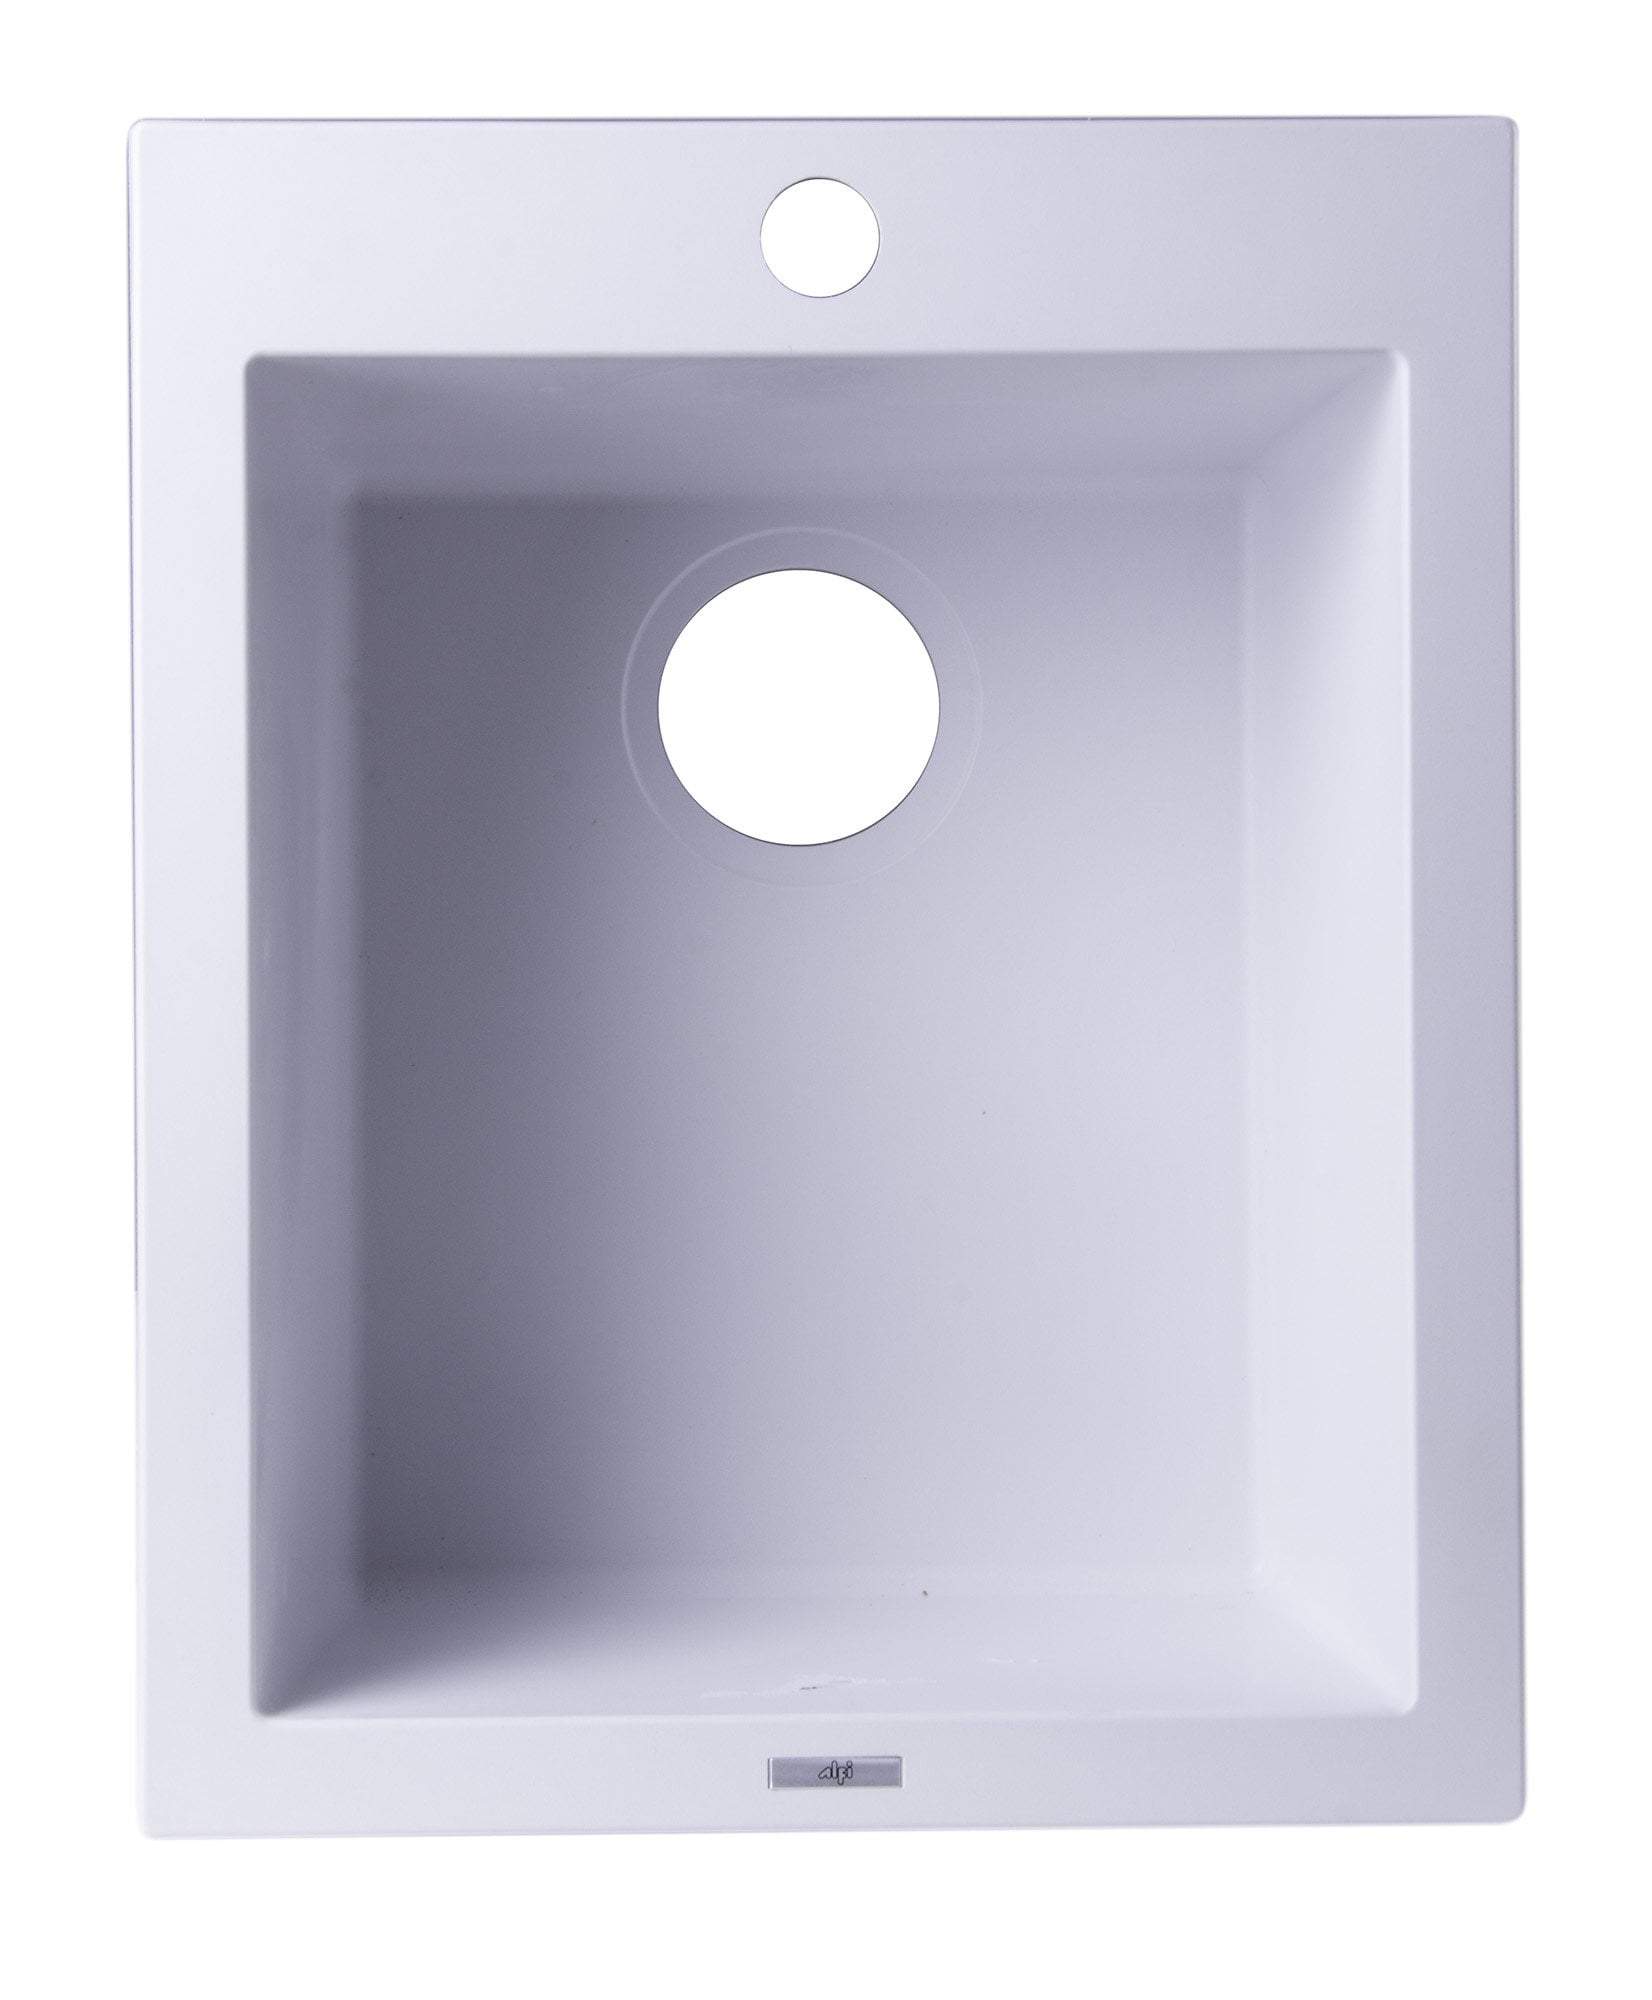 ALFI brand AB1720DI-W White 17" Drop-In Rectangular Granite Composite Kitchen Prep Sink